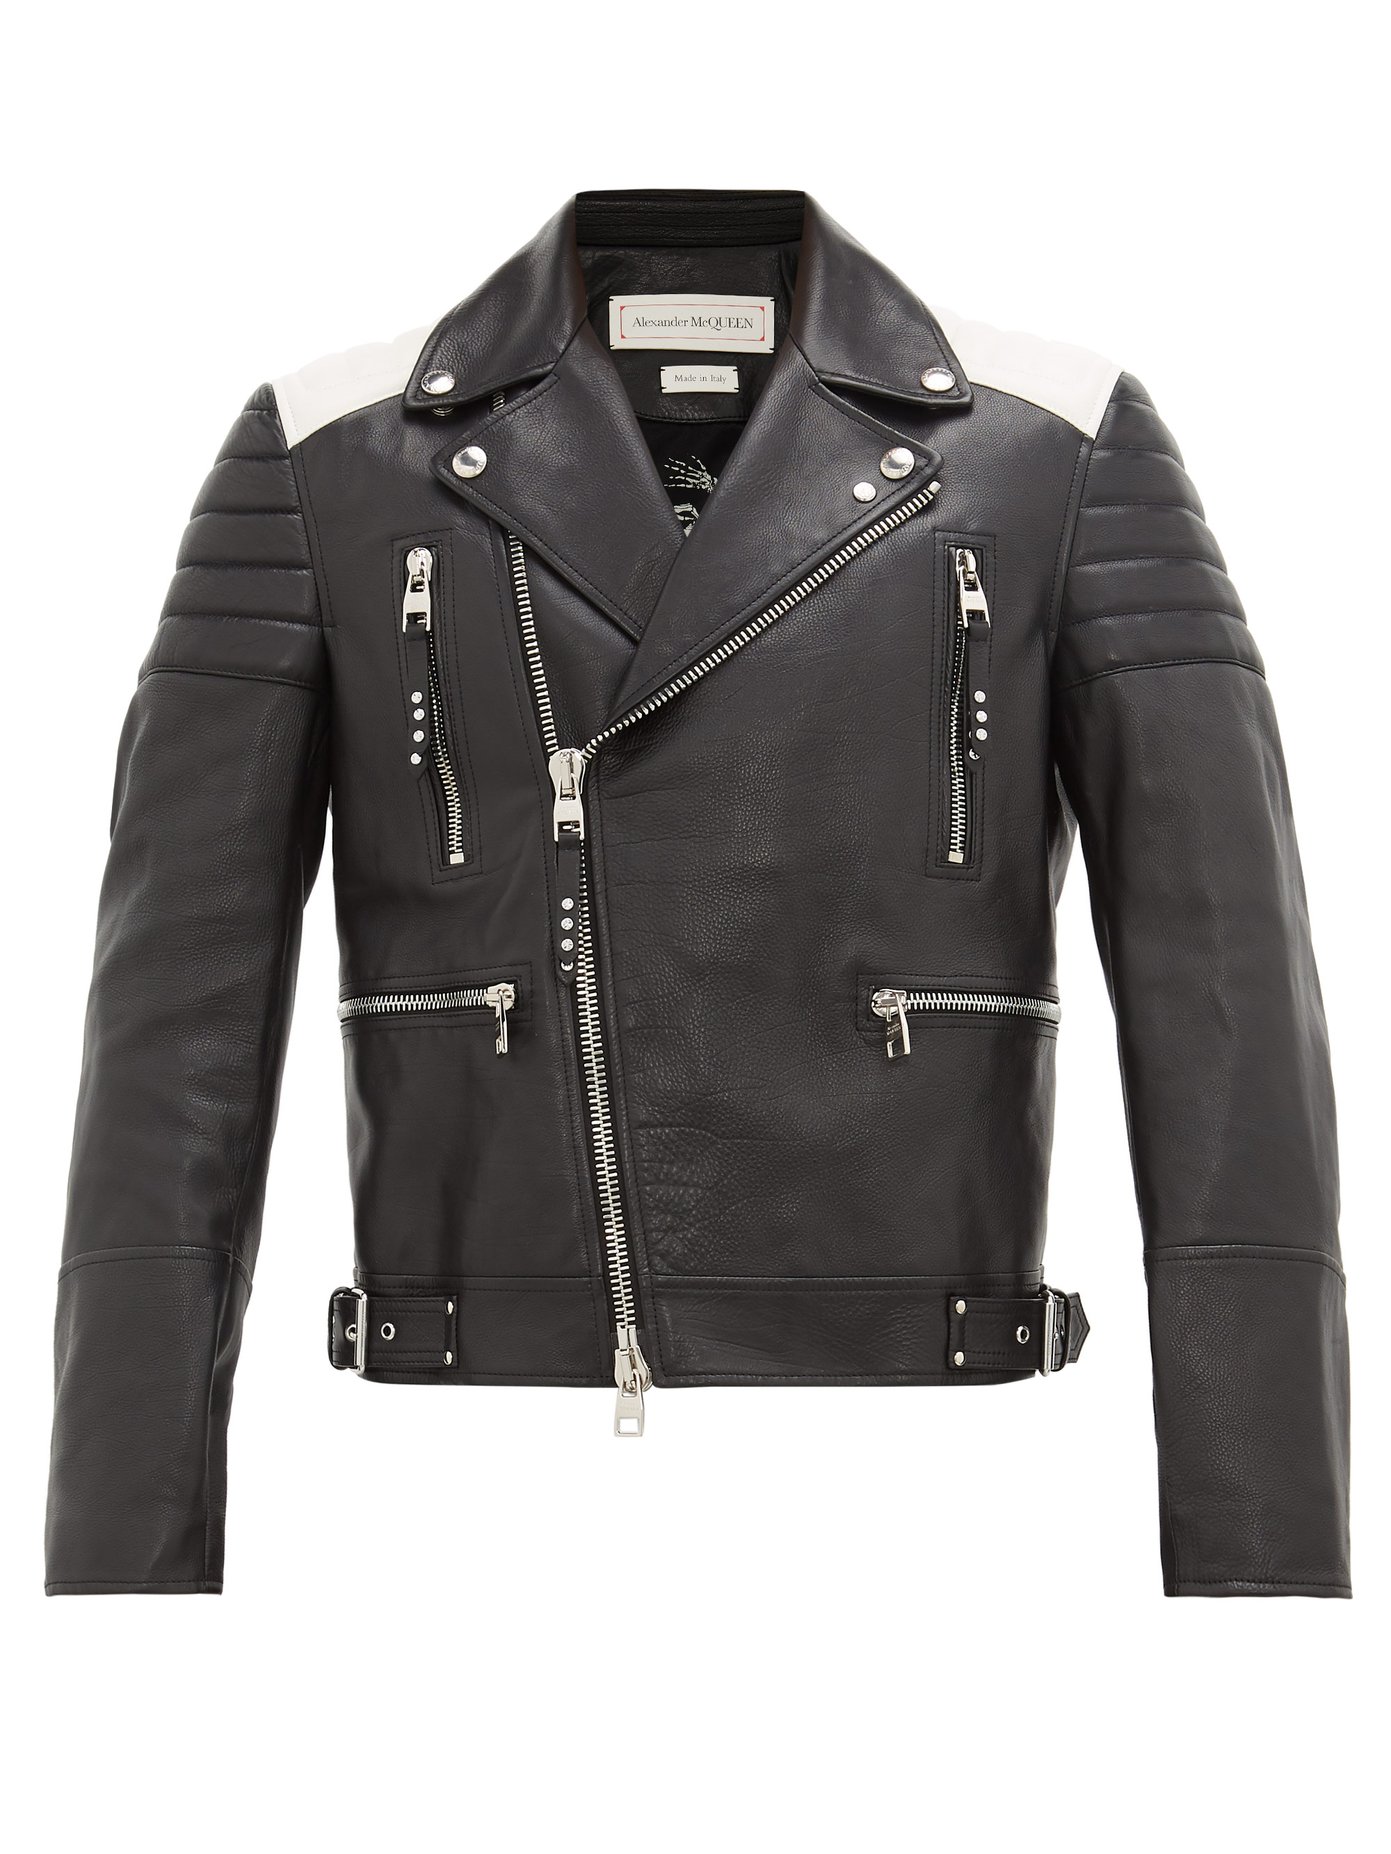 alexander mcqueen black leather jacket